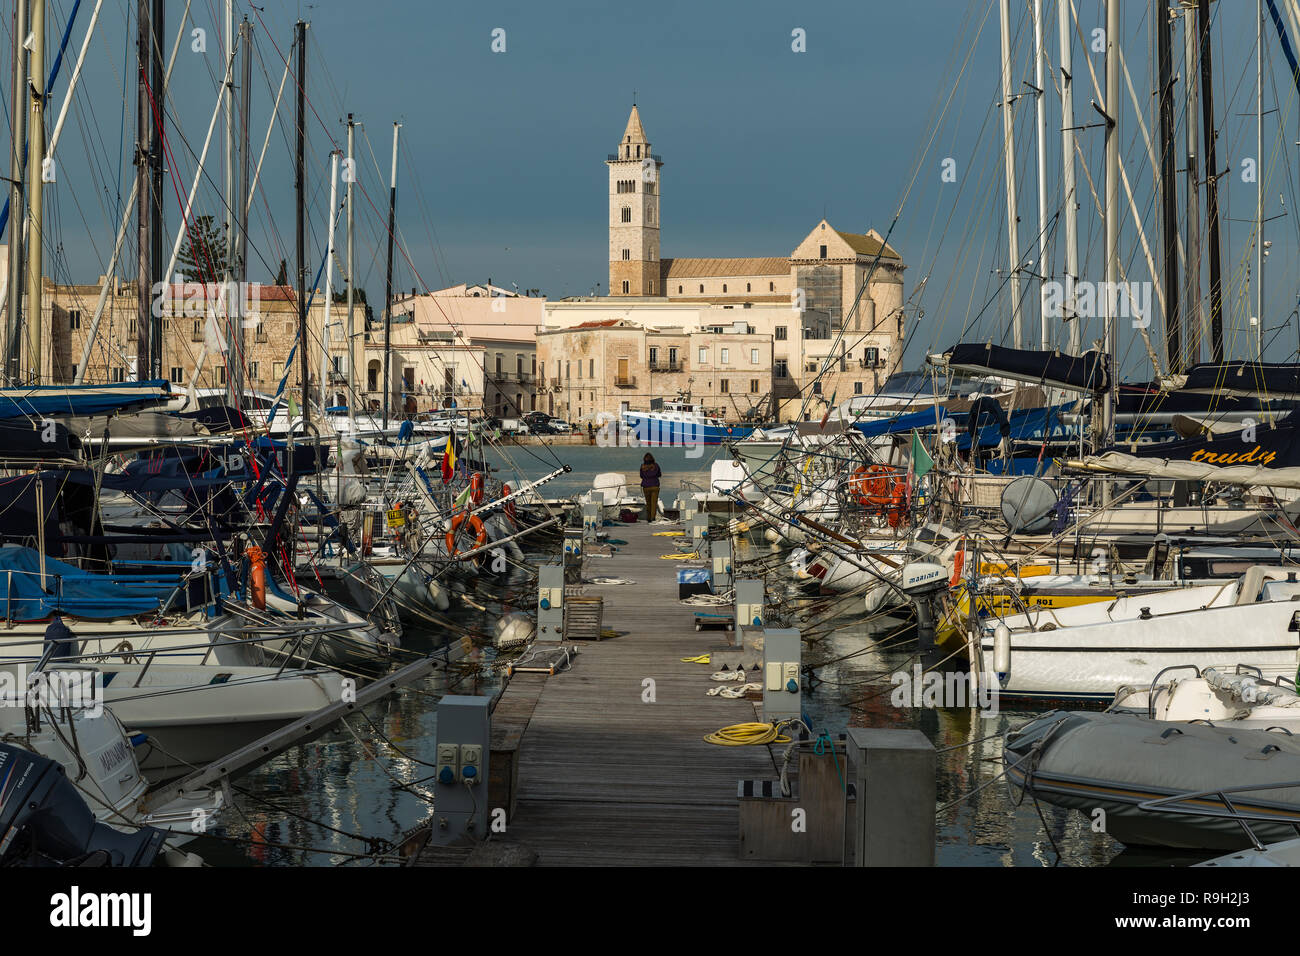 Port de Trani sur la mer Adriatique avec vue sur la cathédrale de San Nicola Pellegrino. Trani, Pouilles, Italie, Europe Banque D'Images